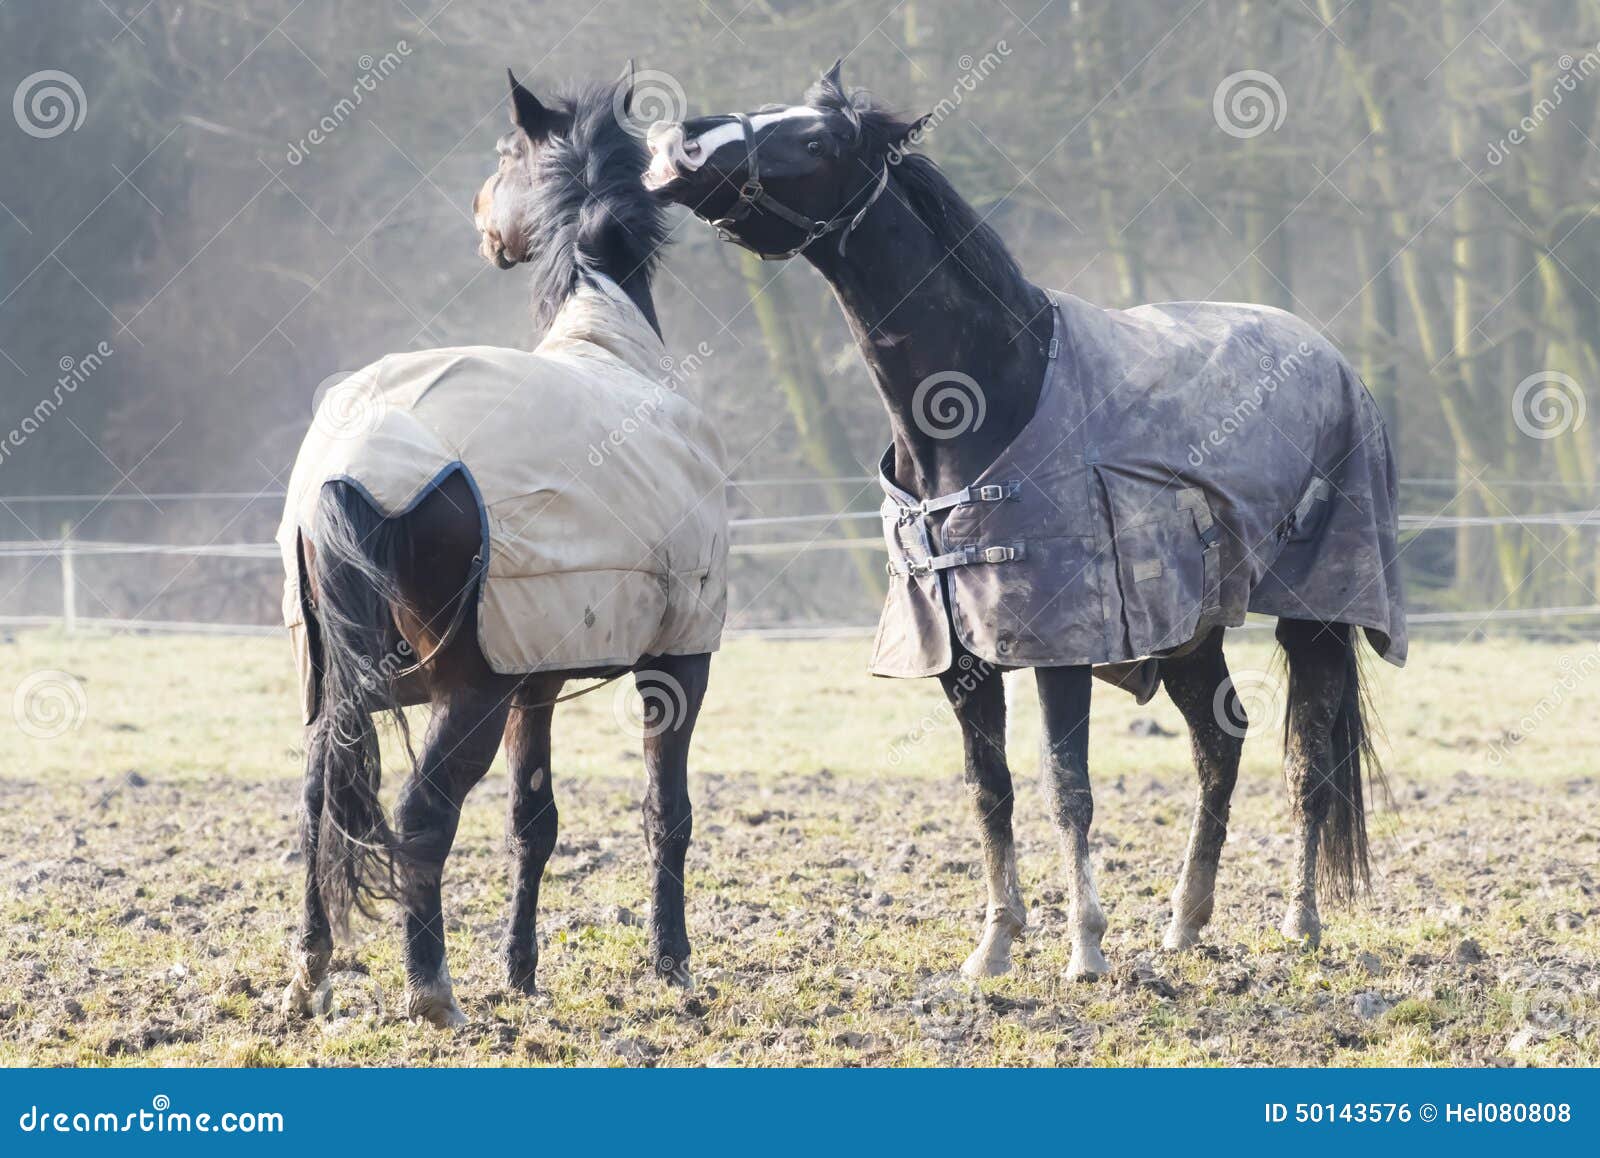 Maldicente del cavallo. Due cavalli marroni nell'amore